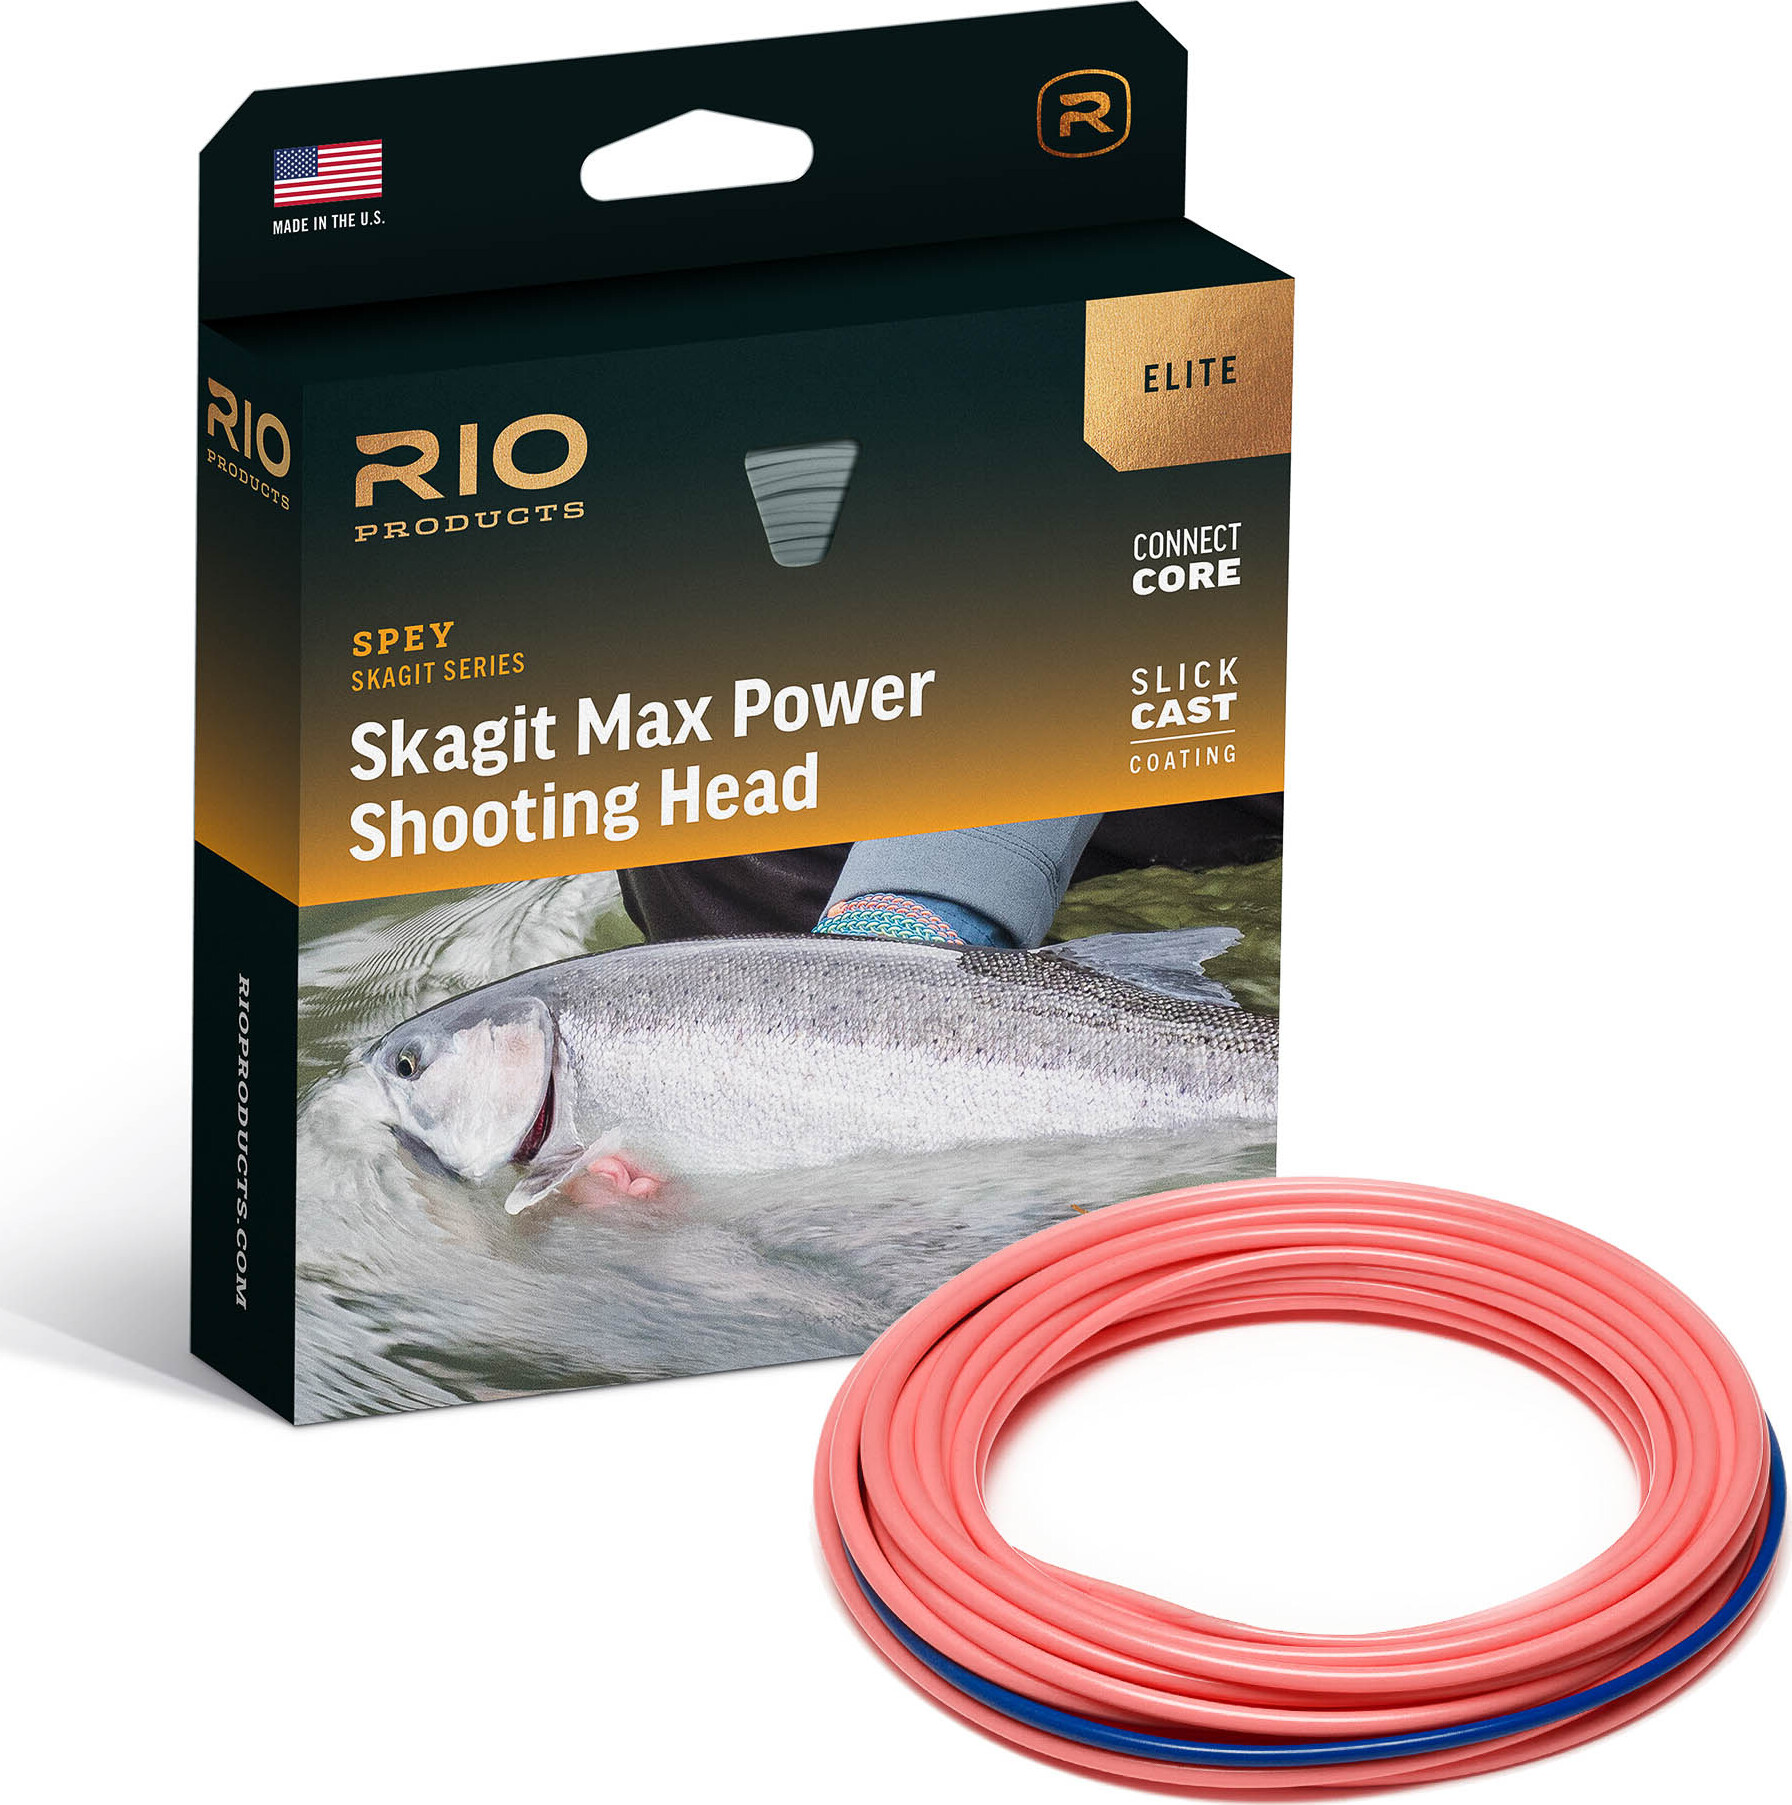 RIO Elite Skagit Max Power Floating Shooting Head – Glasgow